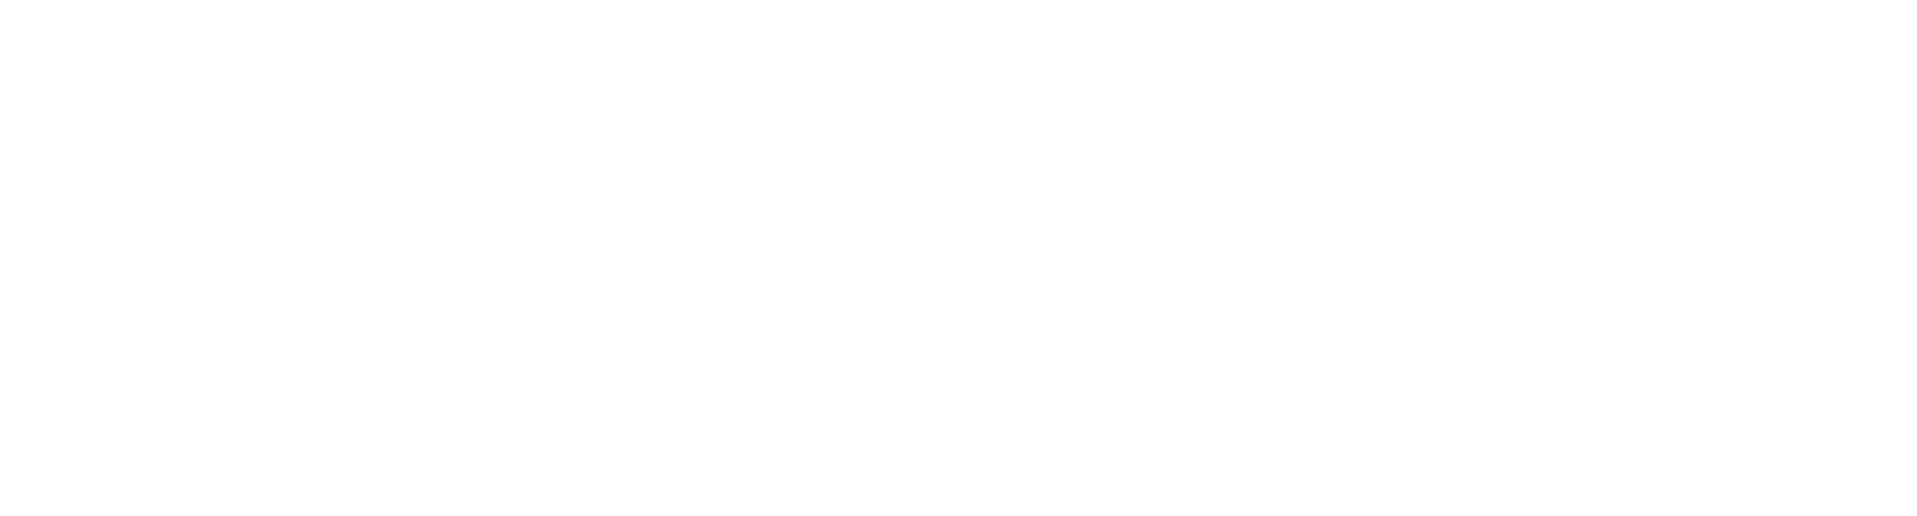 Domínguez musica logo